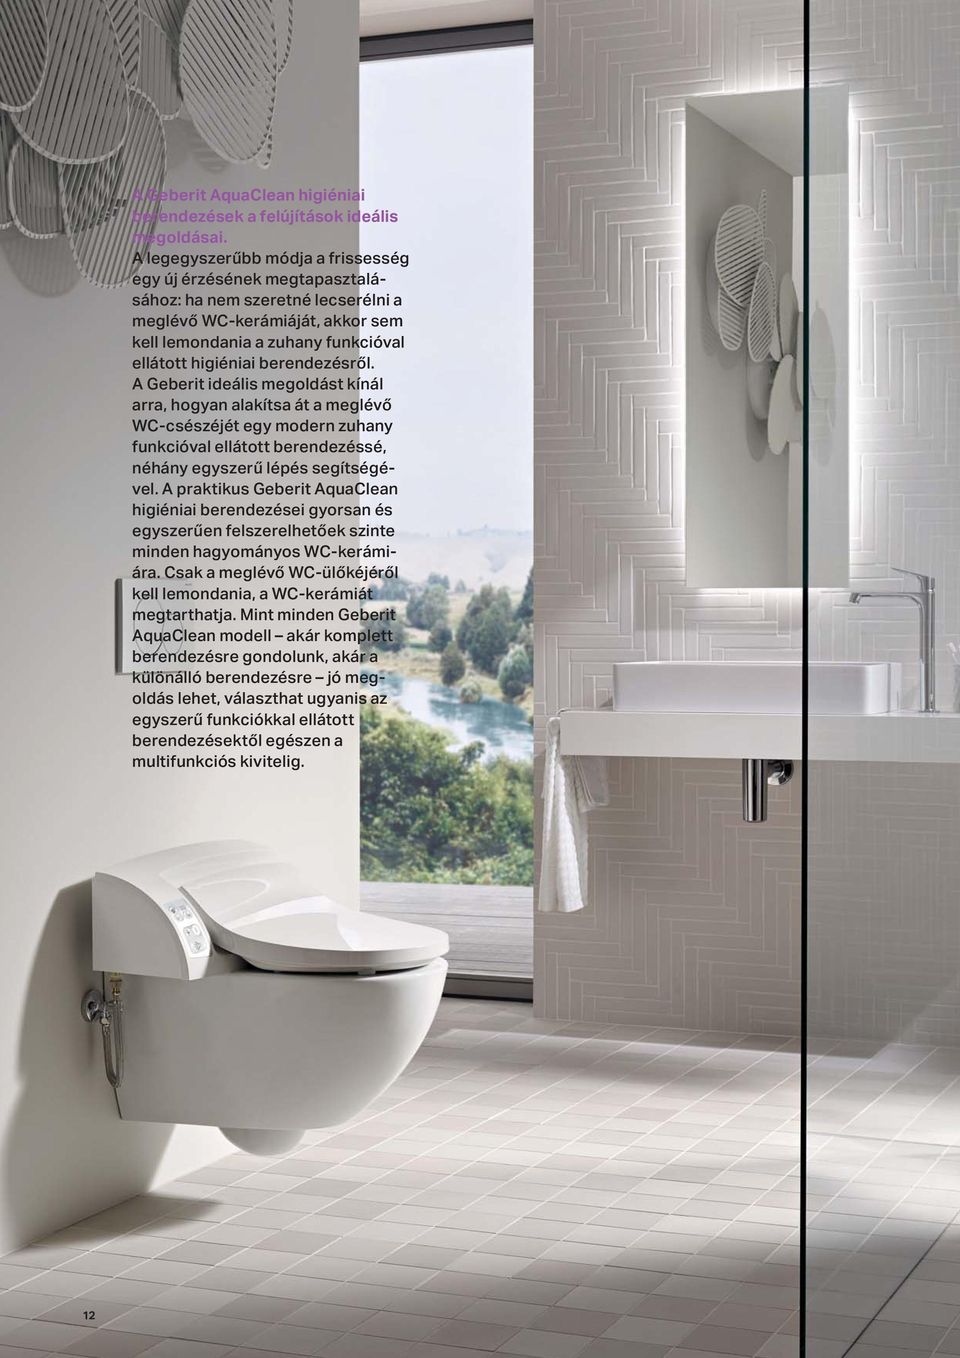 l. A Geberit ideális megoldást kínál arra, hogyan alakítsa át a meglév WC-csészéjét egy modern zuhany funkcióval ellátott berendezéssé, néhány egyszer lépés segítségével.